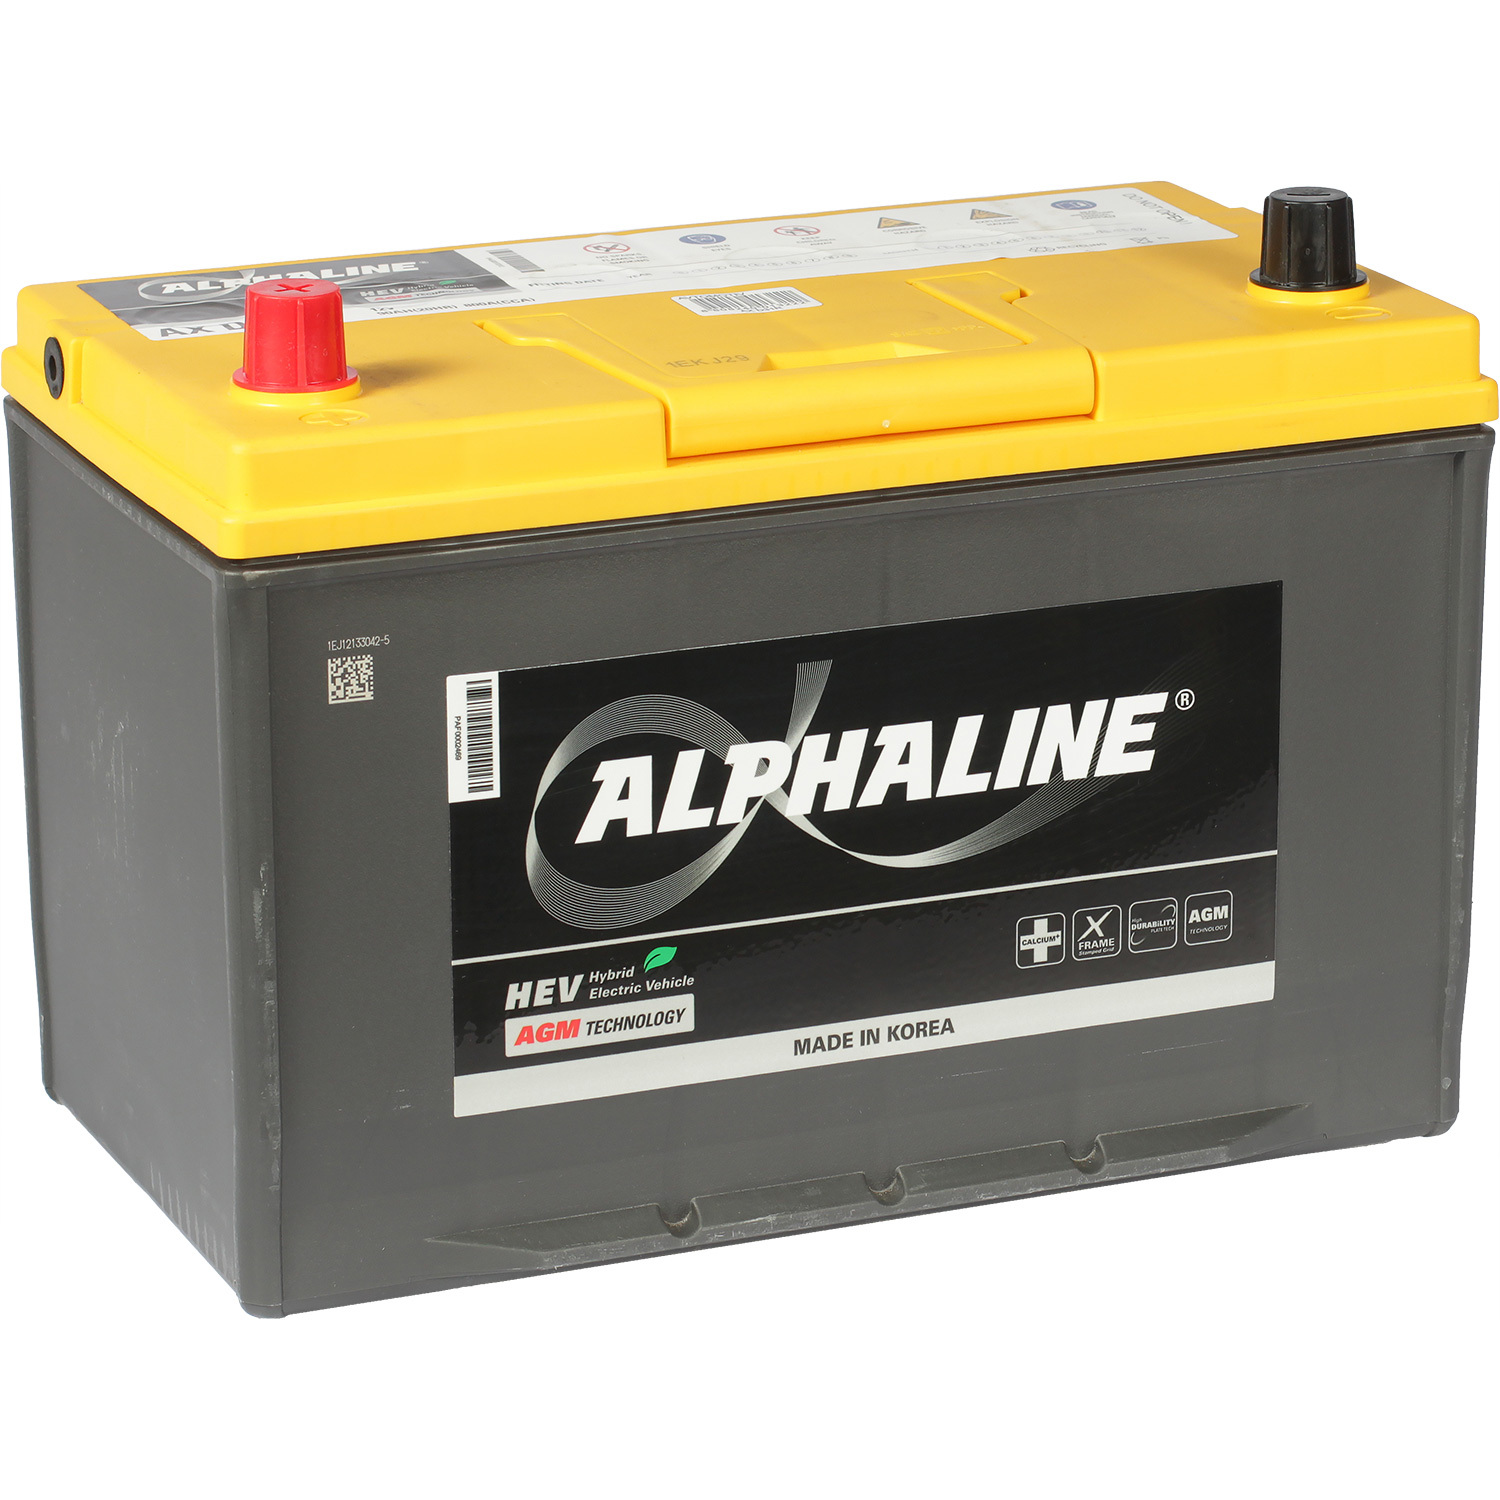 Alphaline Автомобильный аккумулятор Alphaline AGM 90 Ач прямая полярность D31R alphaline автомобильный аккумулятор alphaline ultra 59 ач обратная полярность b24l